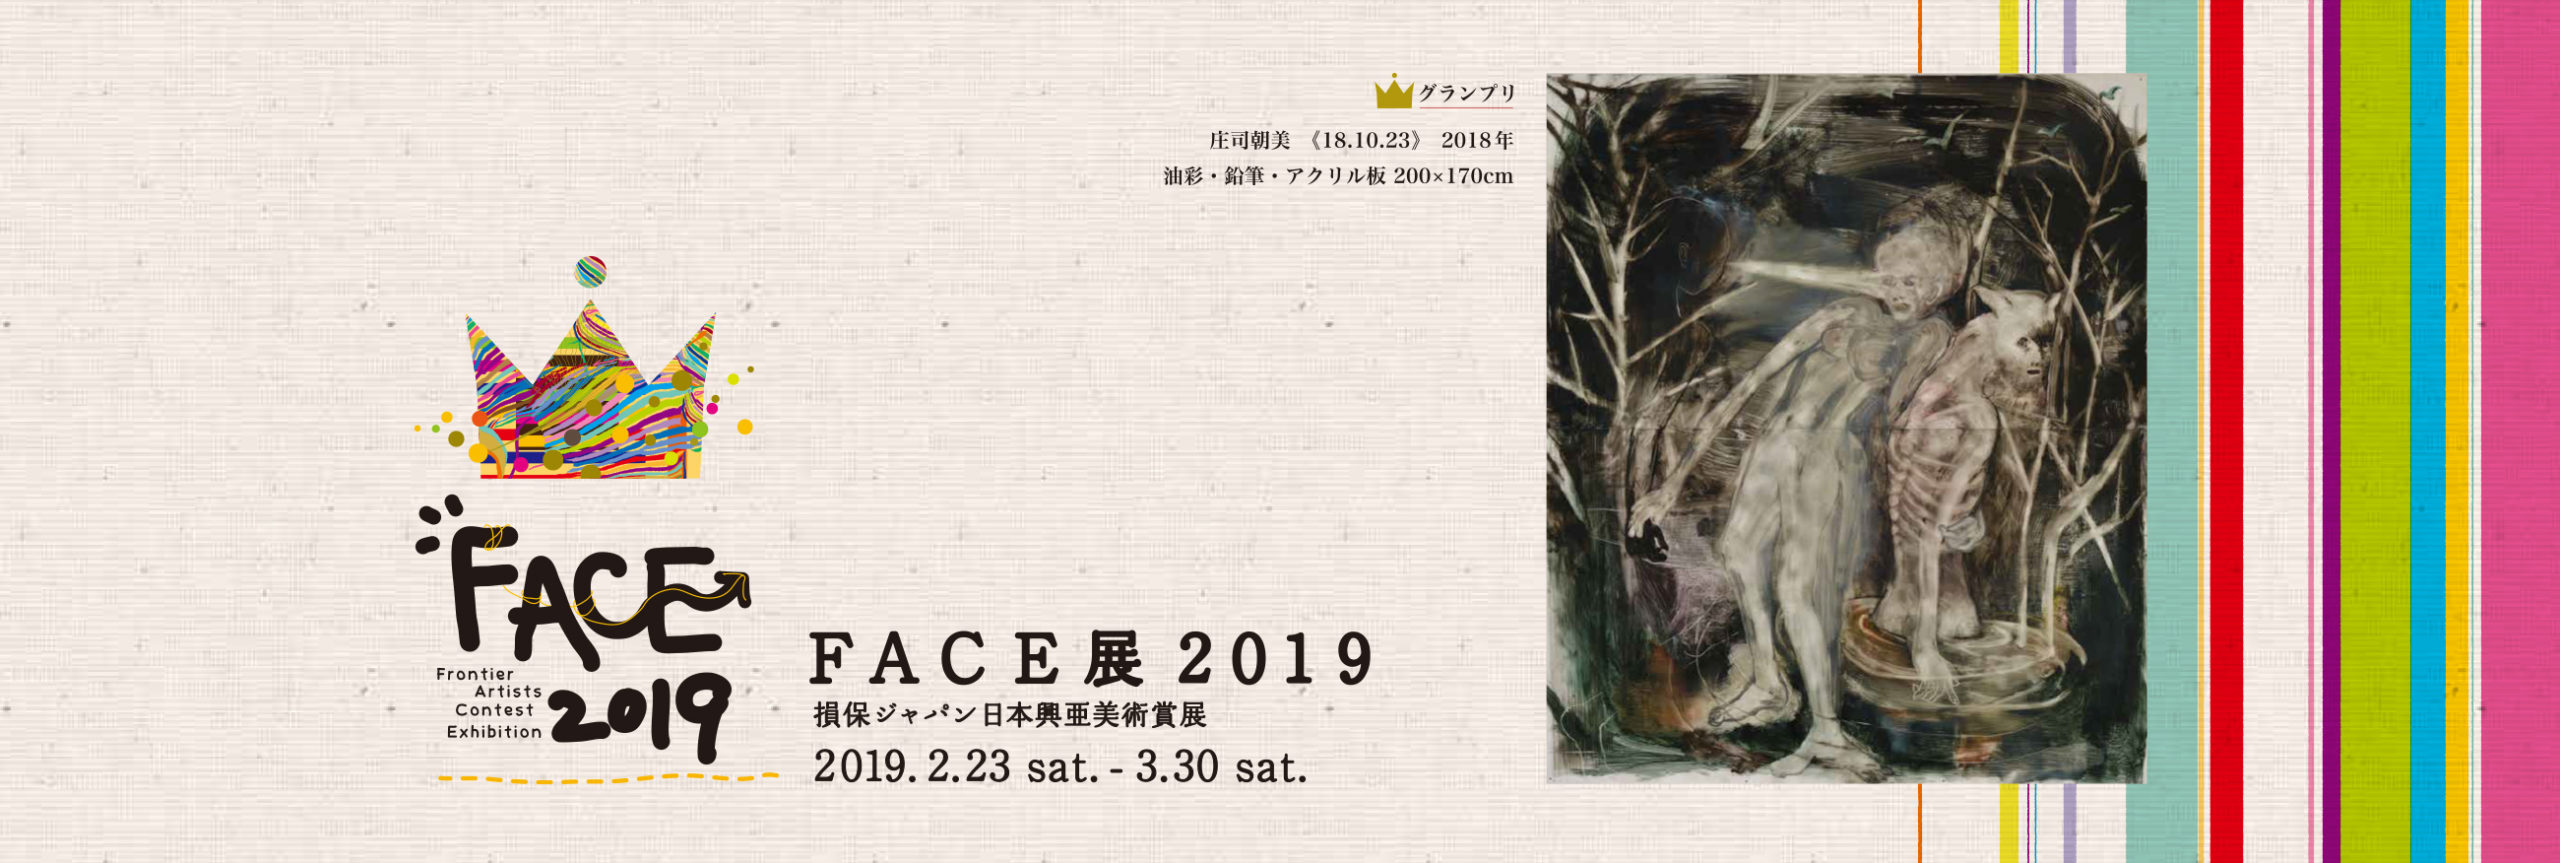 FACE展 2019